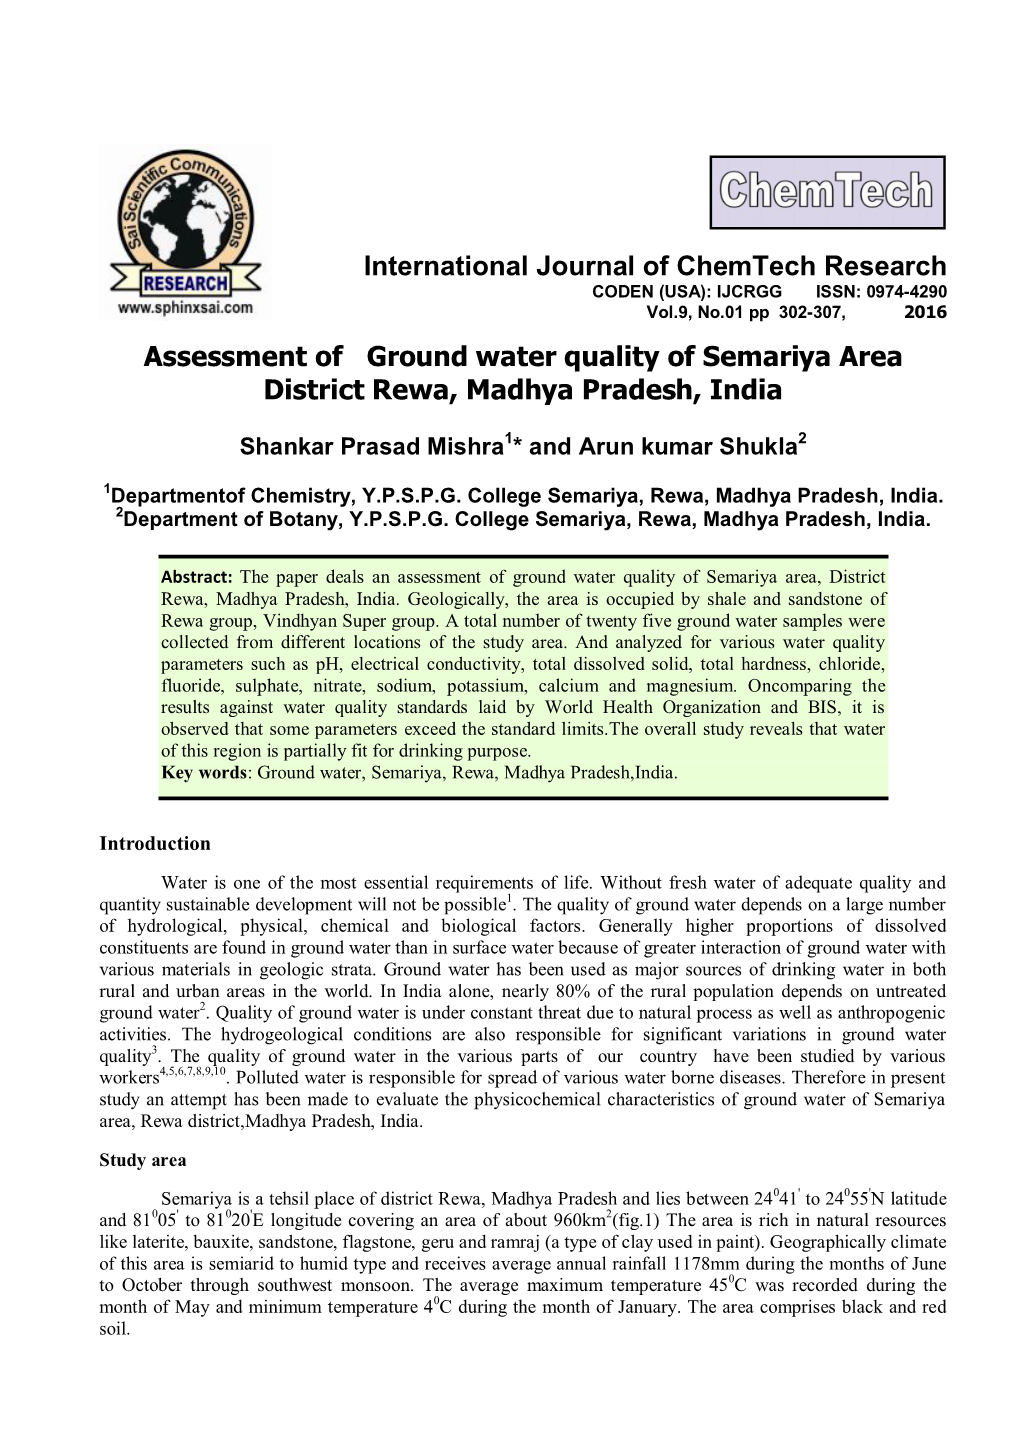 Assessment of Ground Water Quality of Semariya Area District Rewa, Madhya Pradesh, India